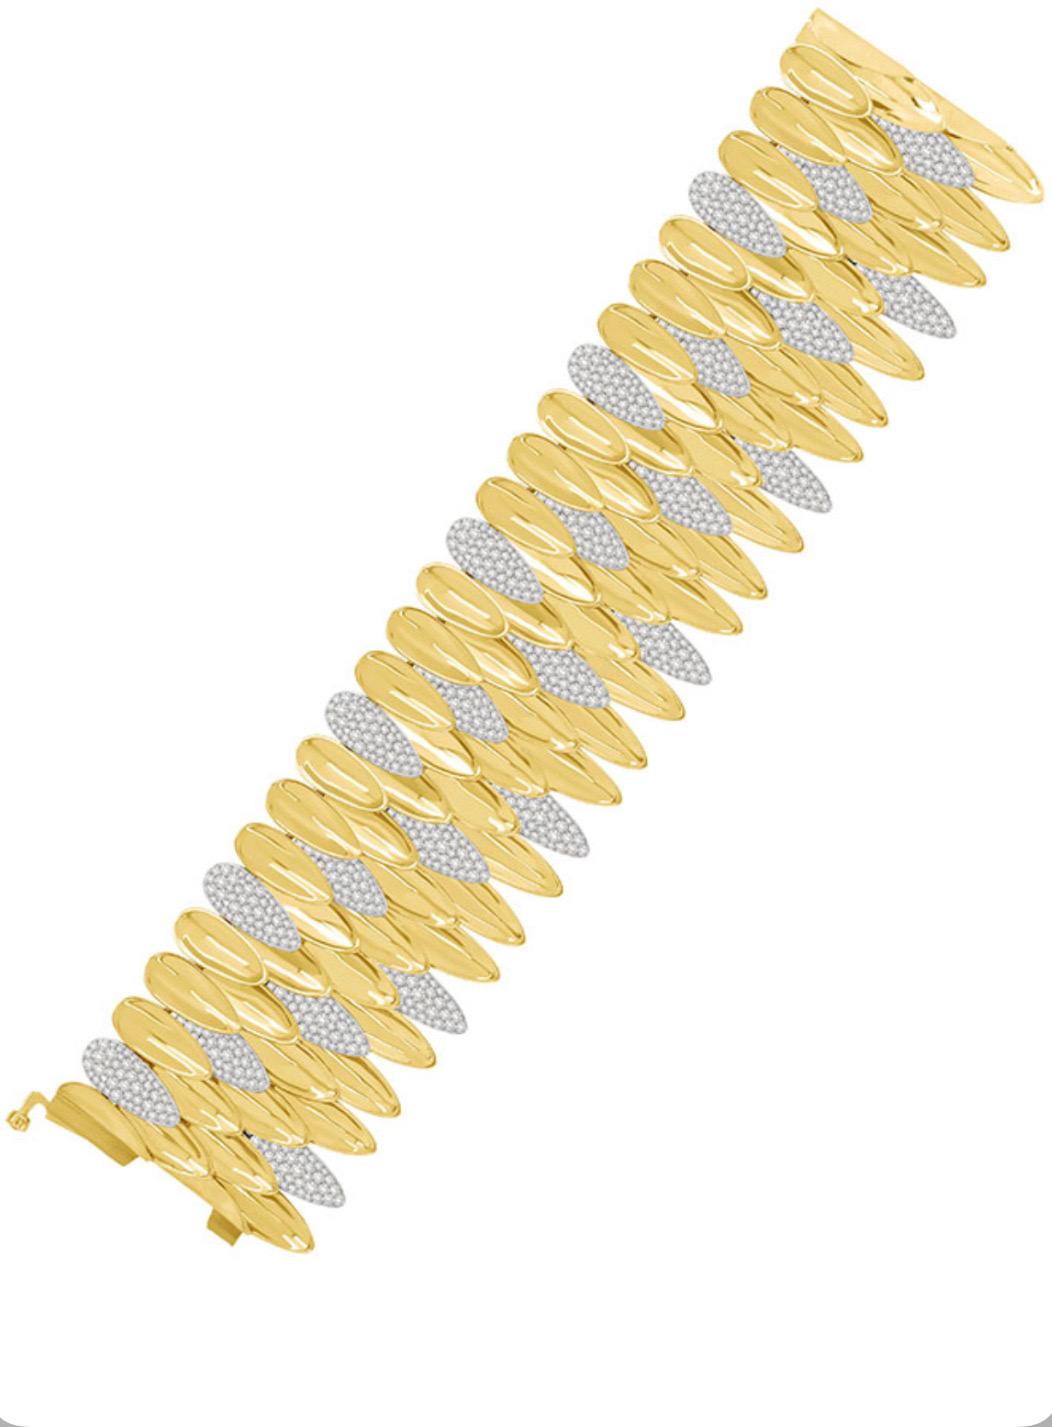 Ein echter Hingucker. Dieses prächtige Armband ist aus 18 Karat Gelb- und Weißgold gefertigt. Das Armband ist mit 4 Reihen von blattförmigen Abschnitten gestaltet. Die glänzenden Gelbgoldblätter wechseln sich mit weißgoldenen, mit Diamanten